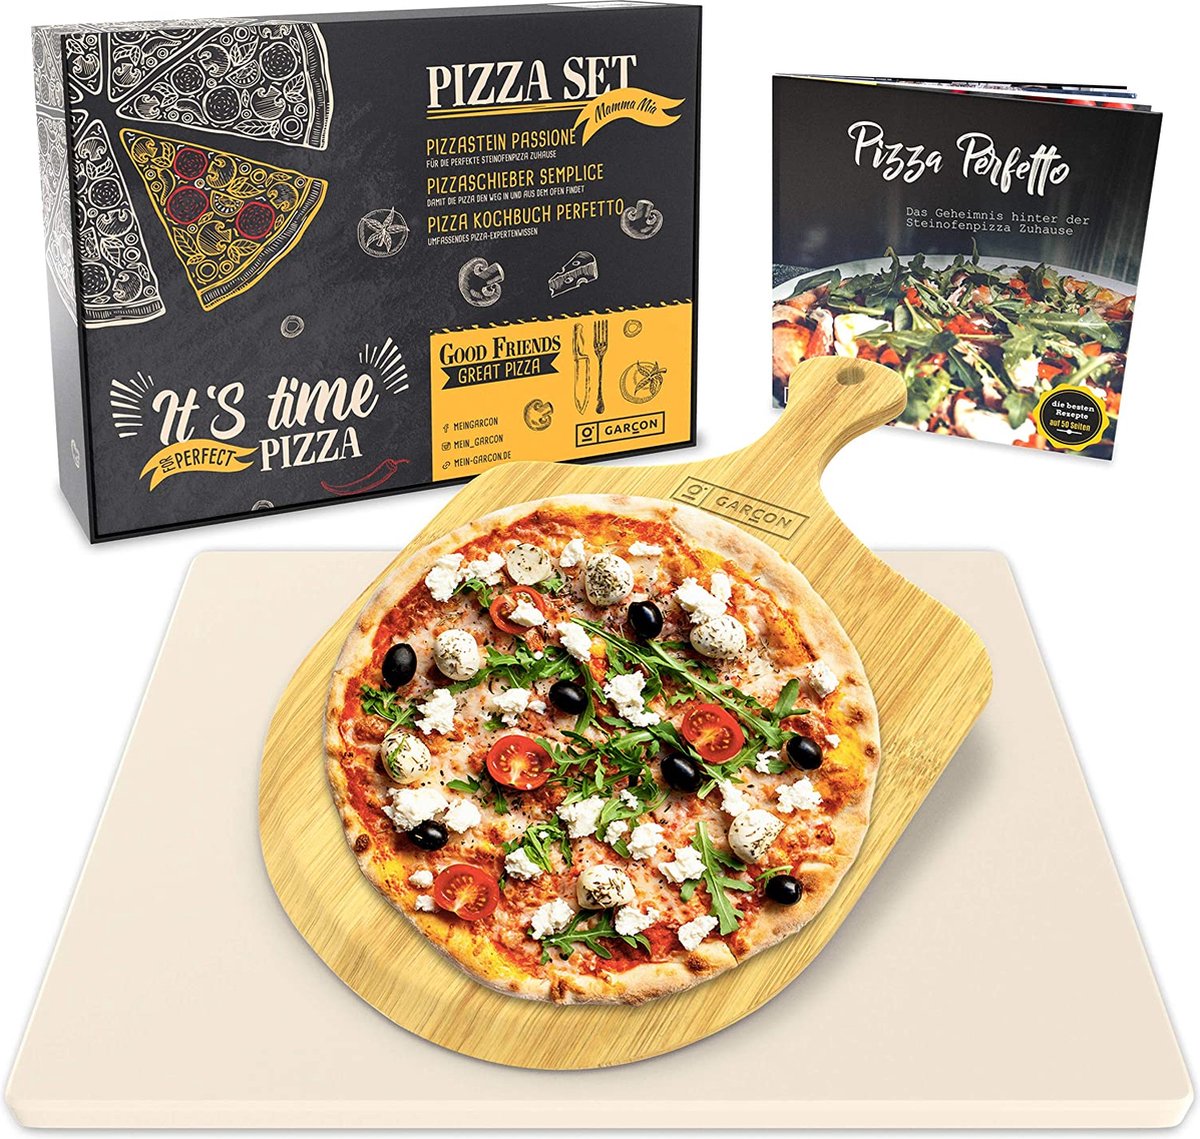 GARCON pizzasteen voor oven en gasgrill - vergelijkende winnaar 2019-3st set incl. pizzasteen, pizzaschuiver & kookboek voor pizza bakken